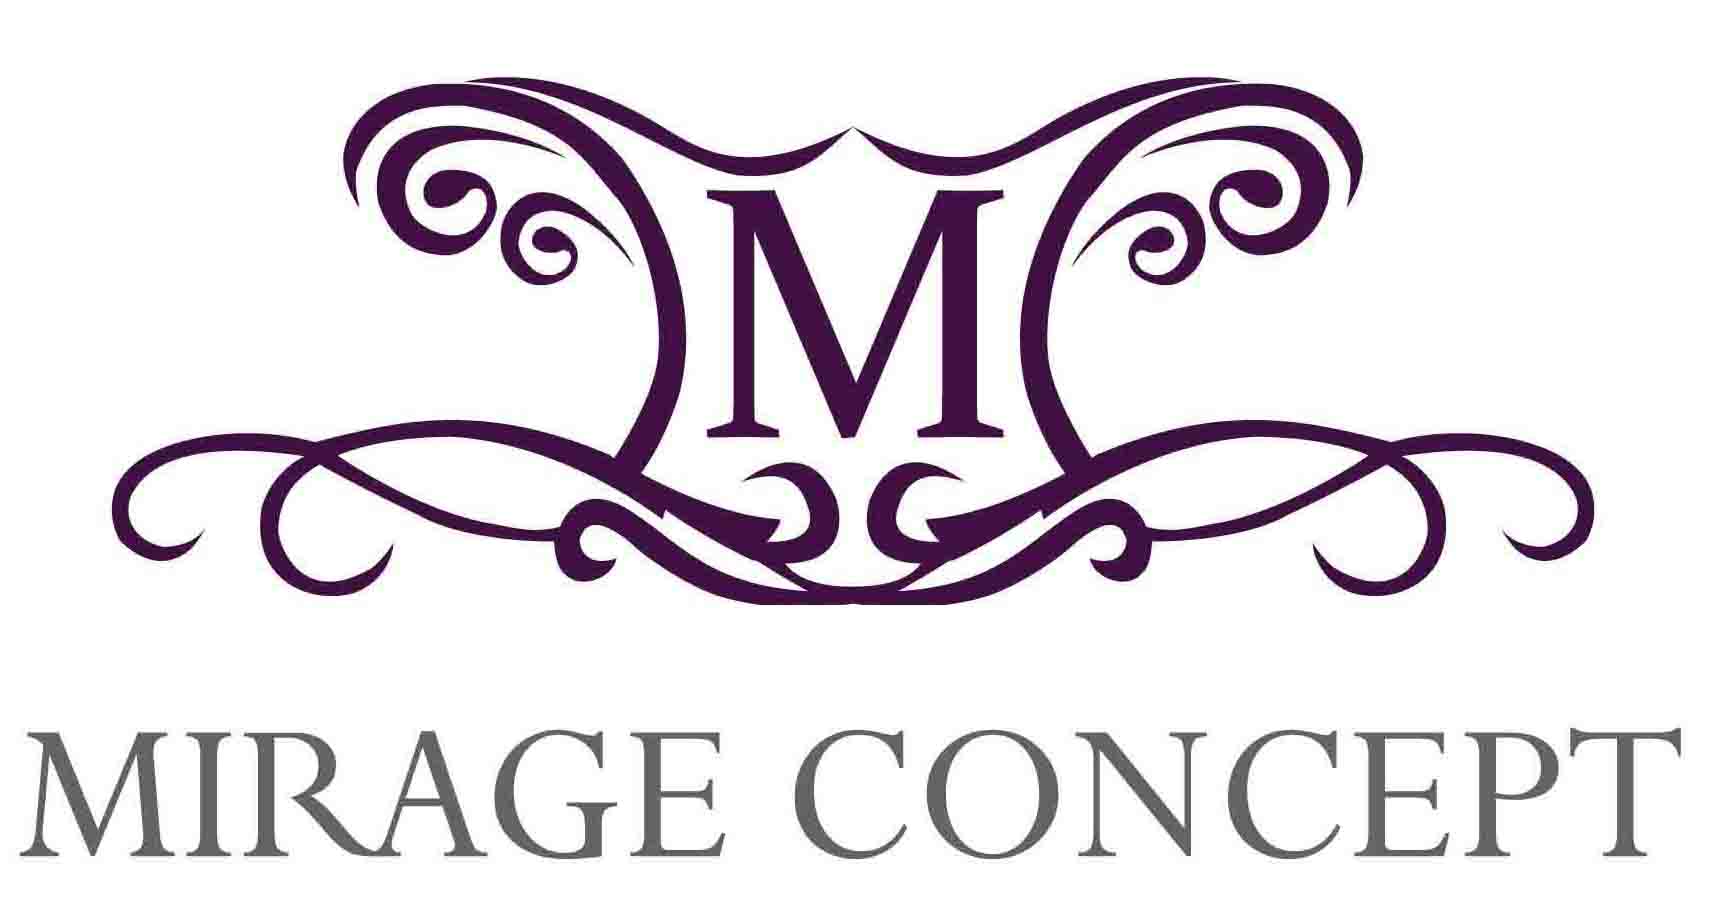 Mirage Concept Event Management Logo